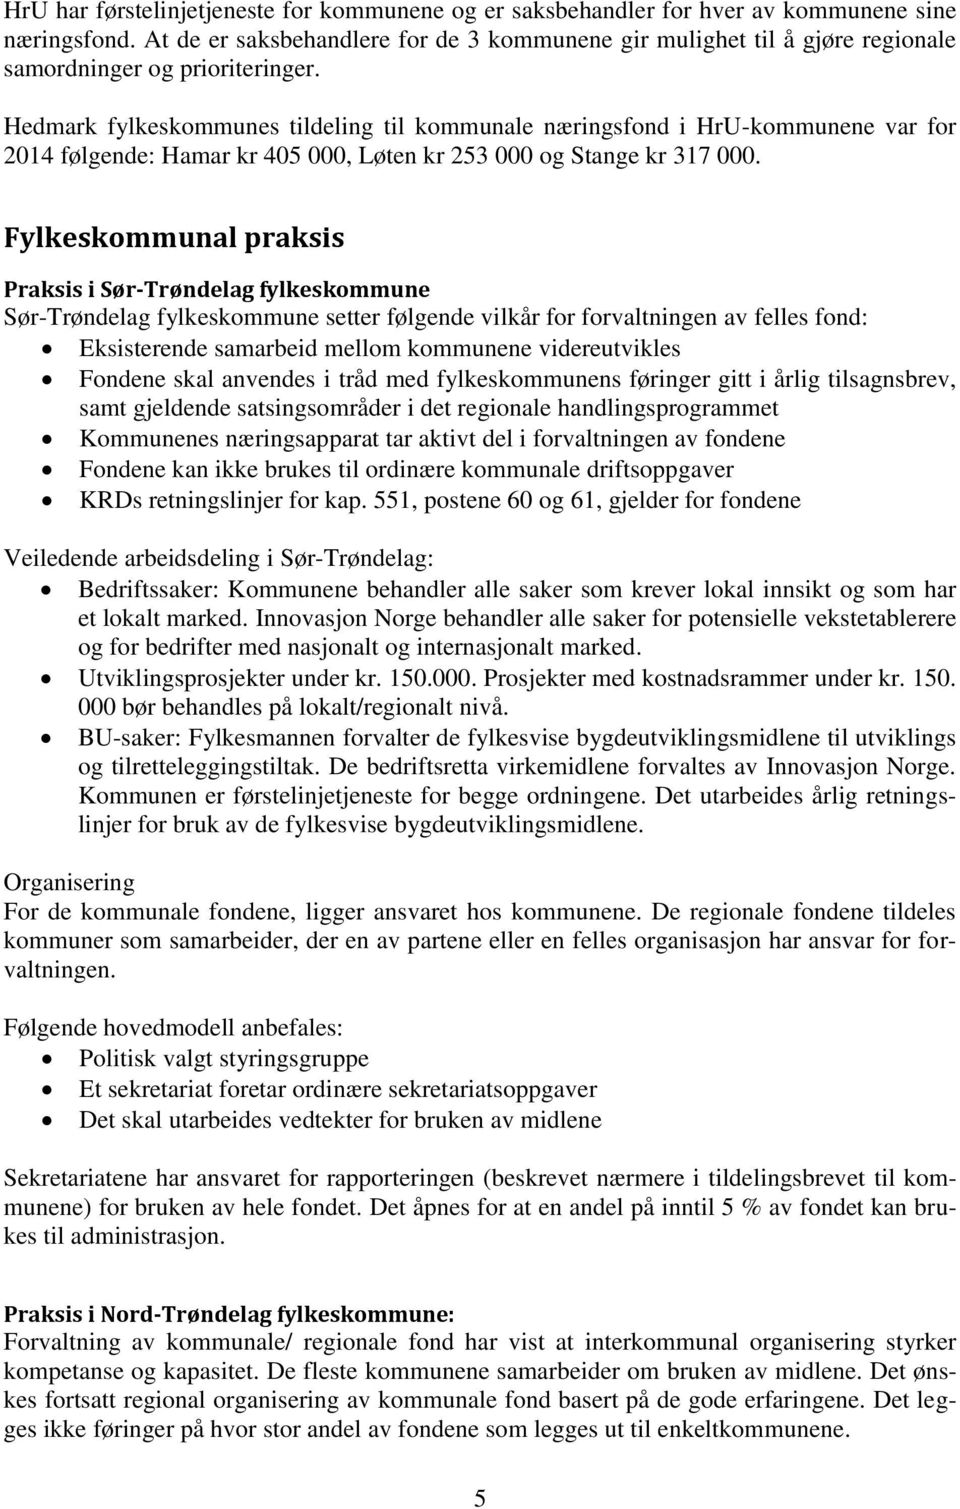 Hedmark fylkeskommunes tildeling til kommunale næringsfond i HrU-kommunene var for 2014 følgende: Hamar kr 405 000, Løten kr 253 000 og Stange kr 317 000.